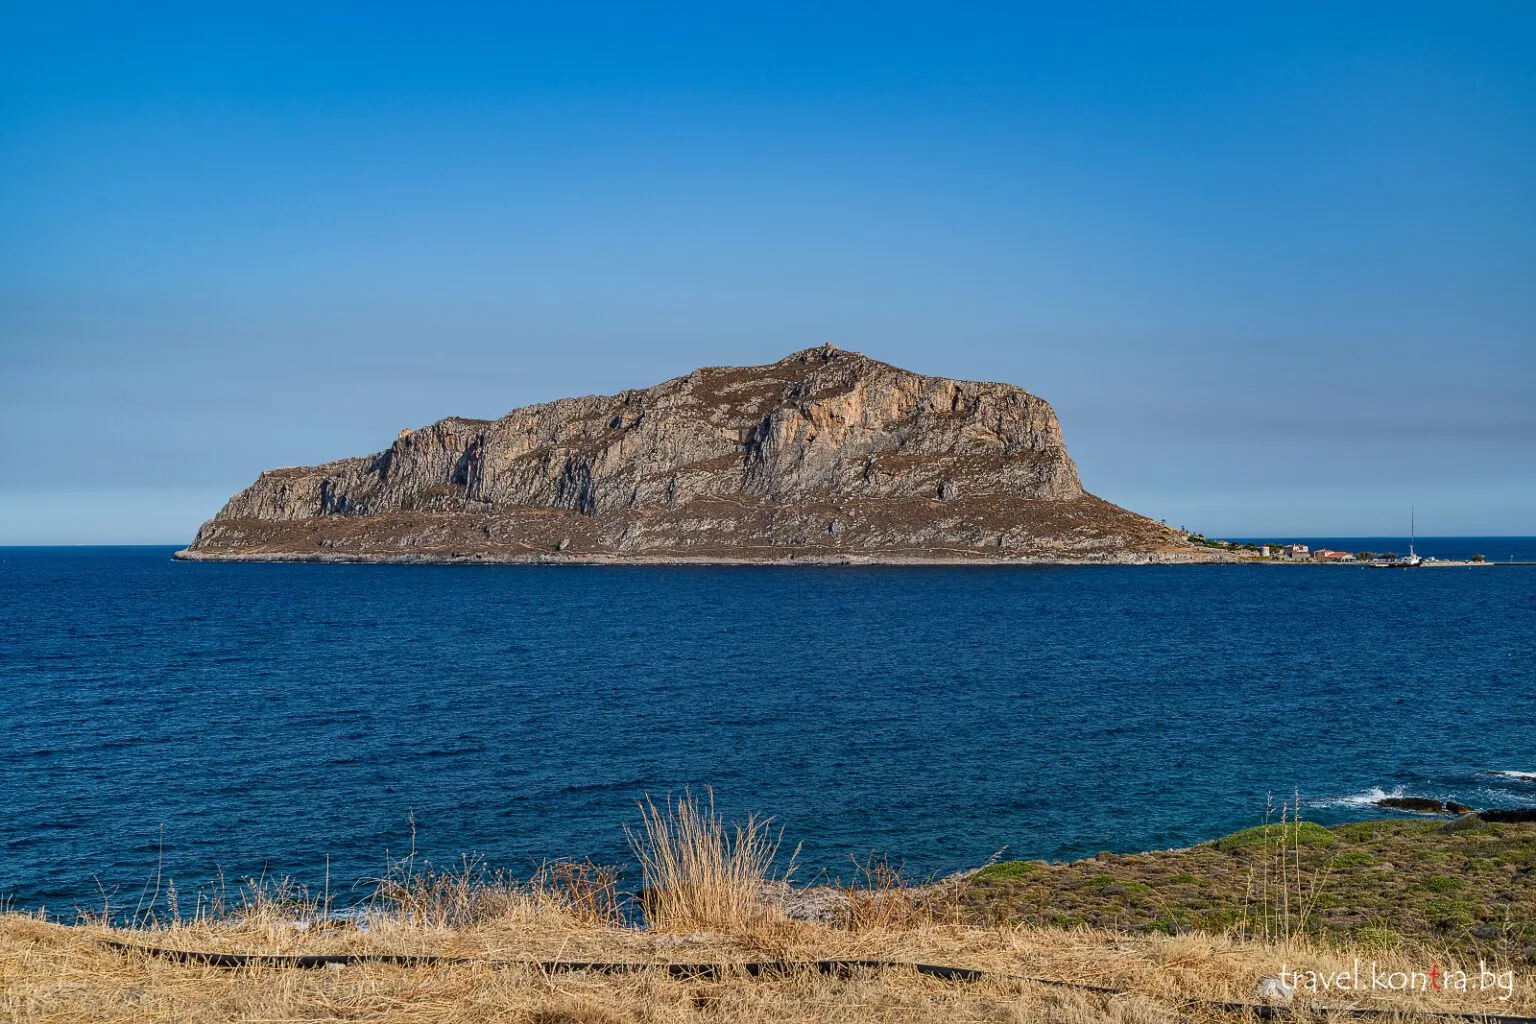 Monemvasia island from a parking spot near Gefira, Greece